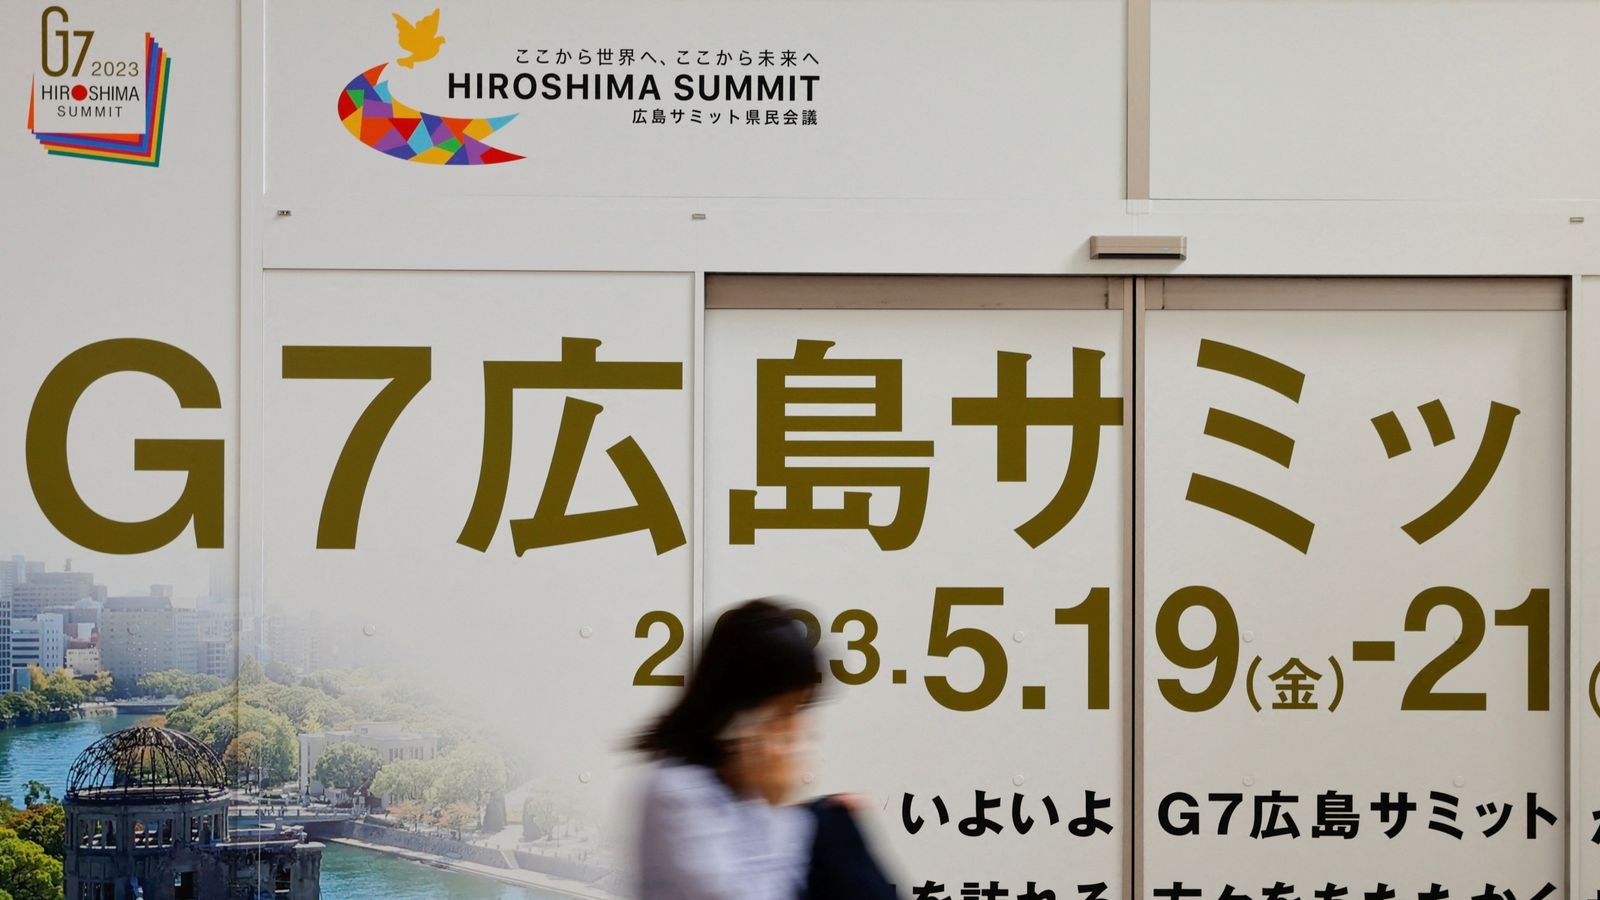 Economia, Ucraina e regione indo-pacifica nell’agenda di Rishi Sunak alla vigilia del G7 in Giappone |  Notizie di politica